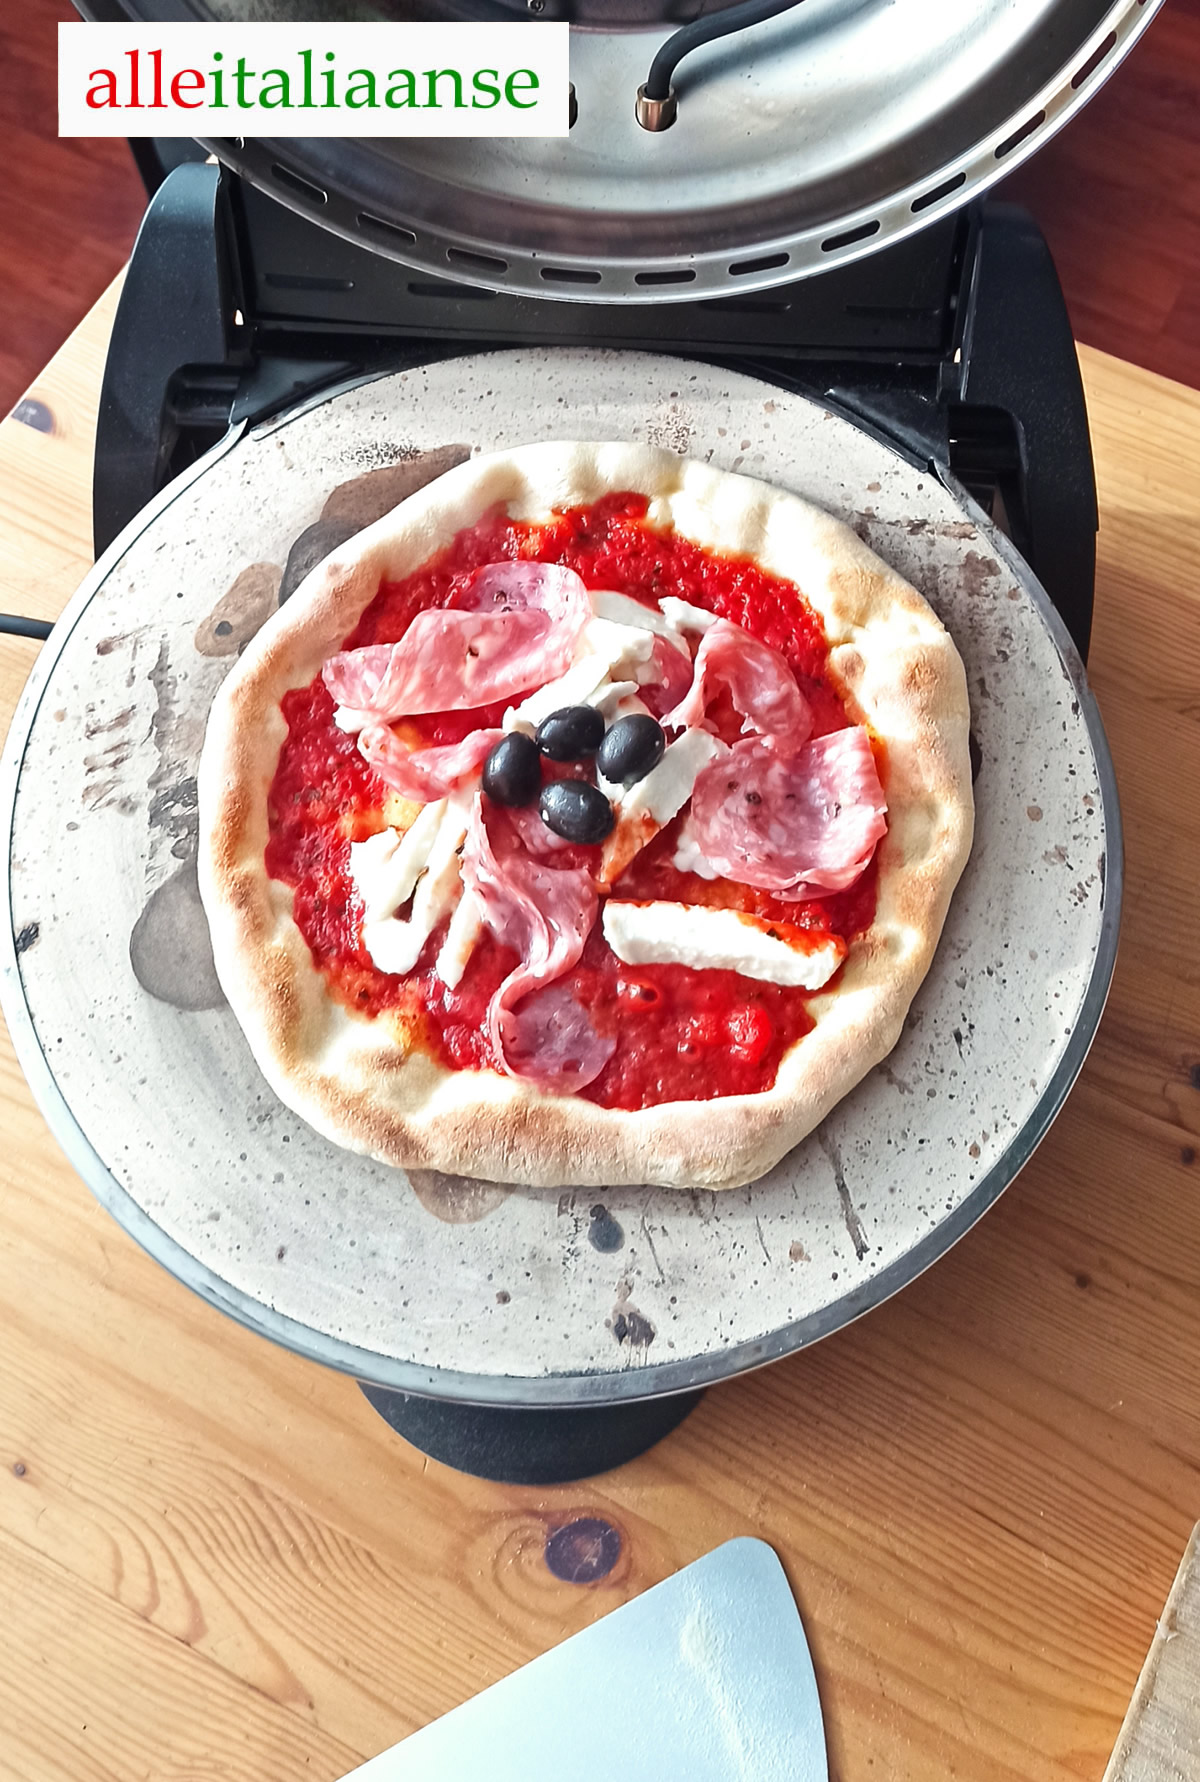 Pizza diavola gebakken met elektrische pizzaoven G3 Ferrari - Alle Italiaanse